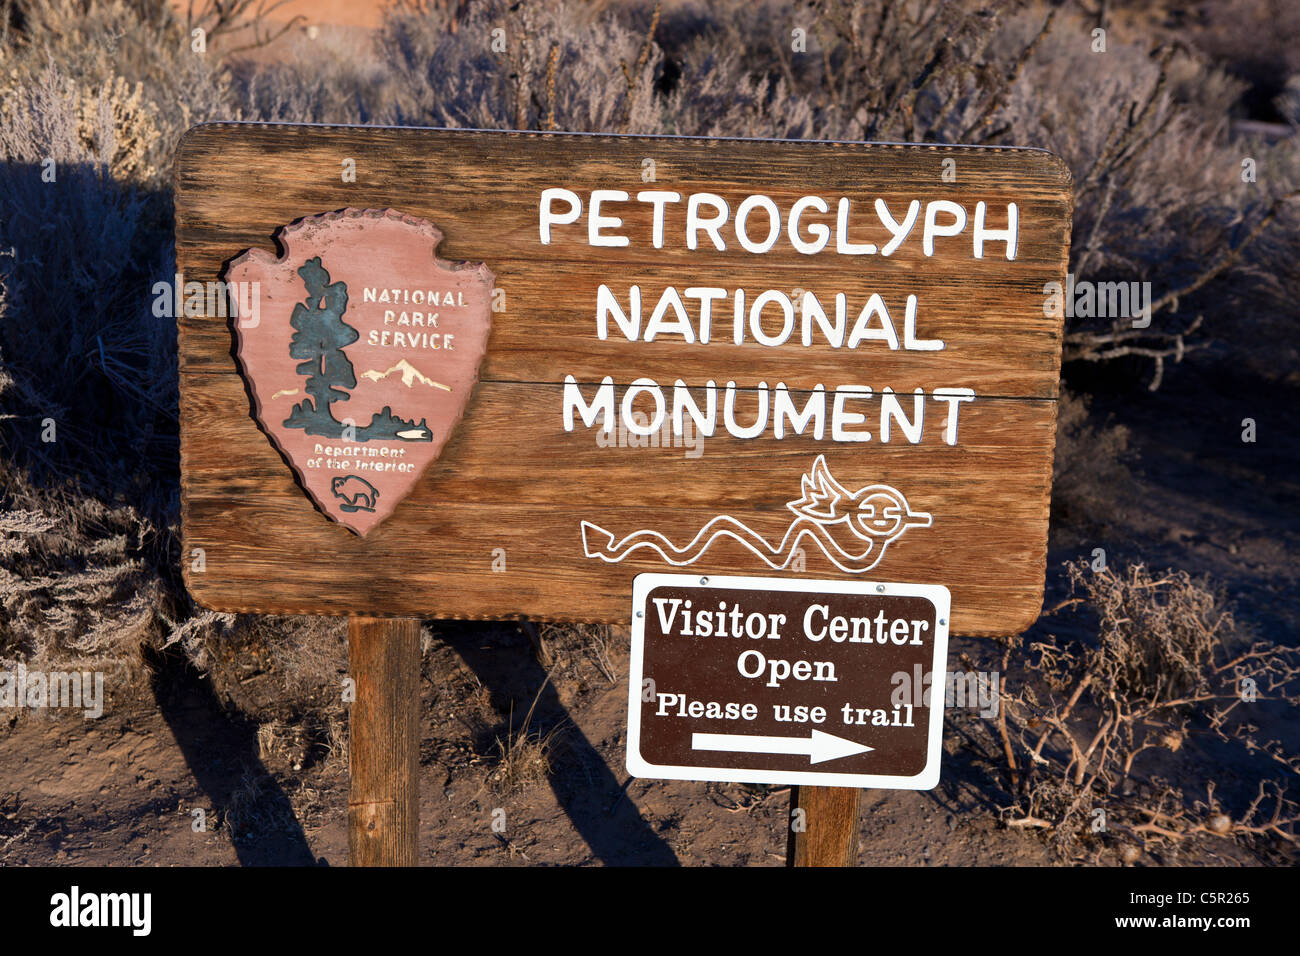 National Park Service Bienvenue au centre d'inscription, Petroglyph National Monument, Albuquerque, New Mexico, USA Banque D'Images